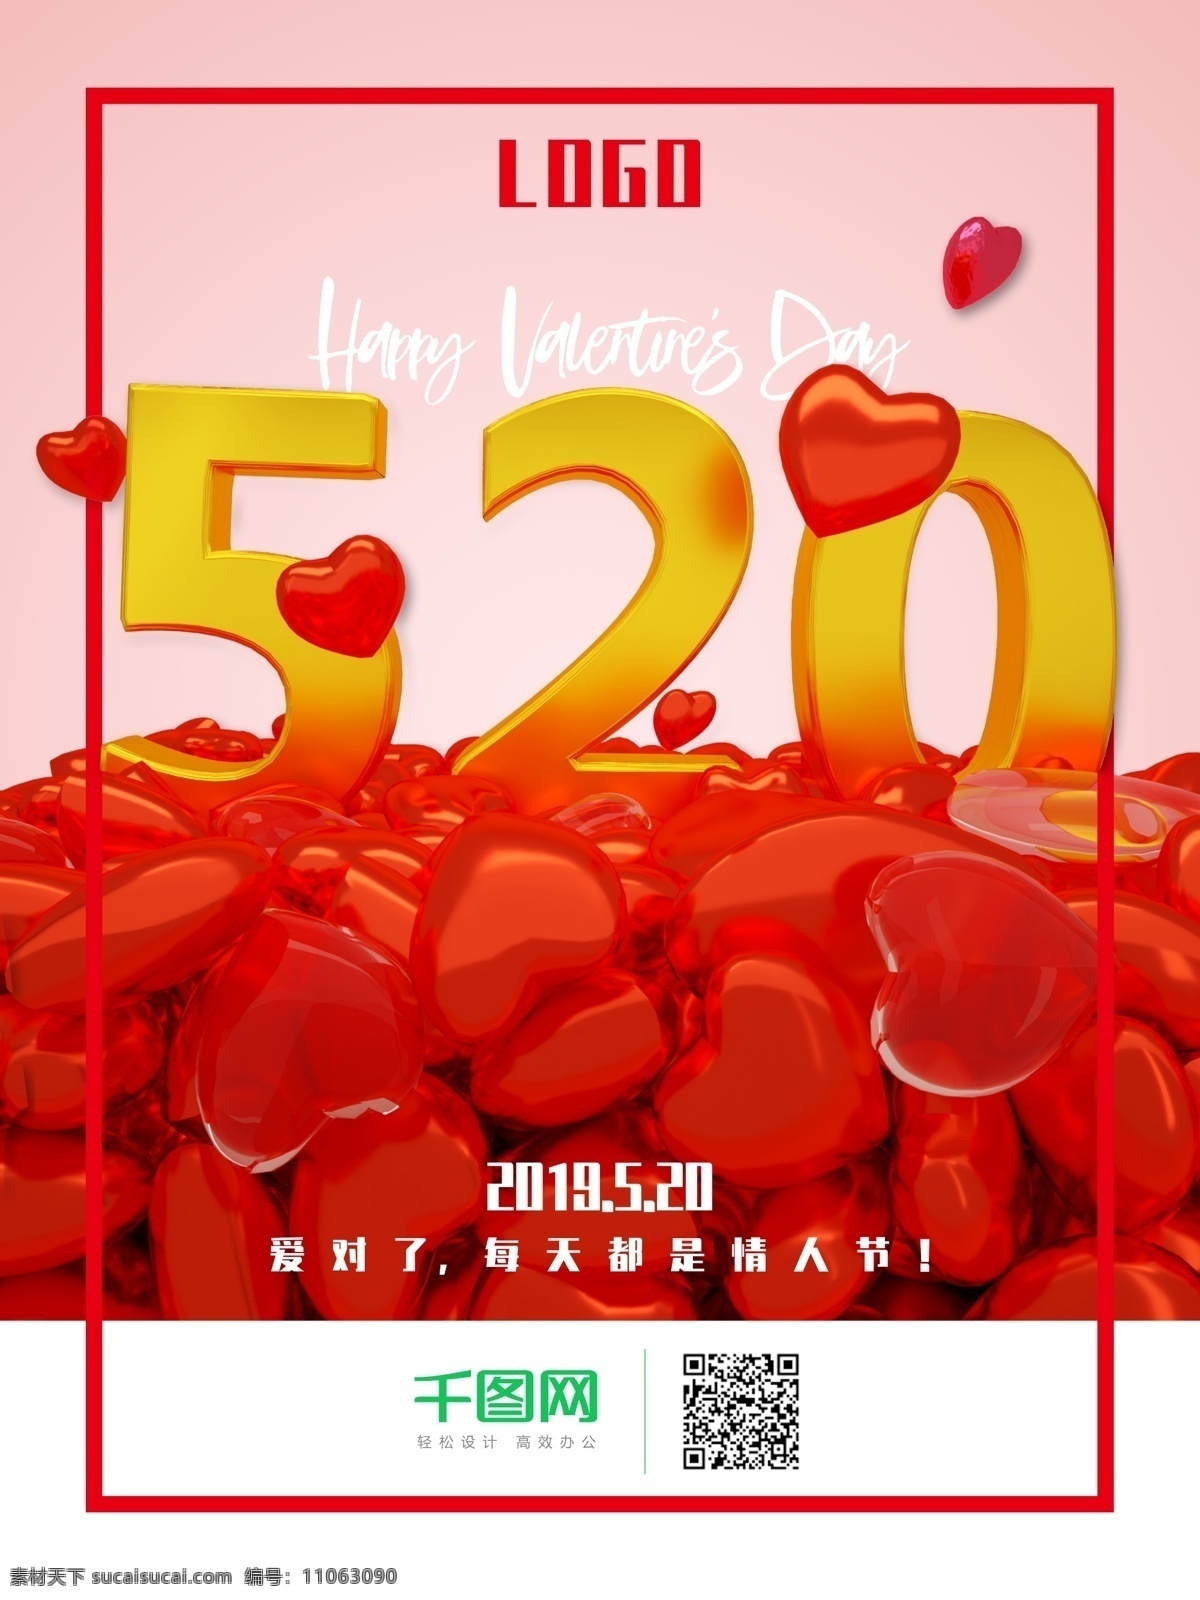 520 情人节 快乐 宣传海报 情人节快乐 happy valentines day 宣传 海报 爱心 立体